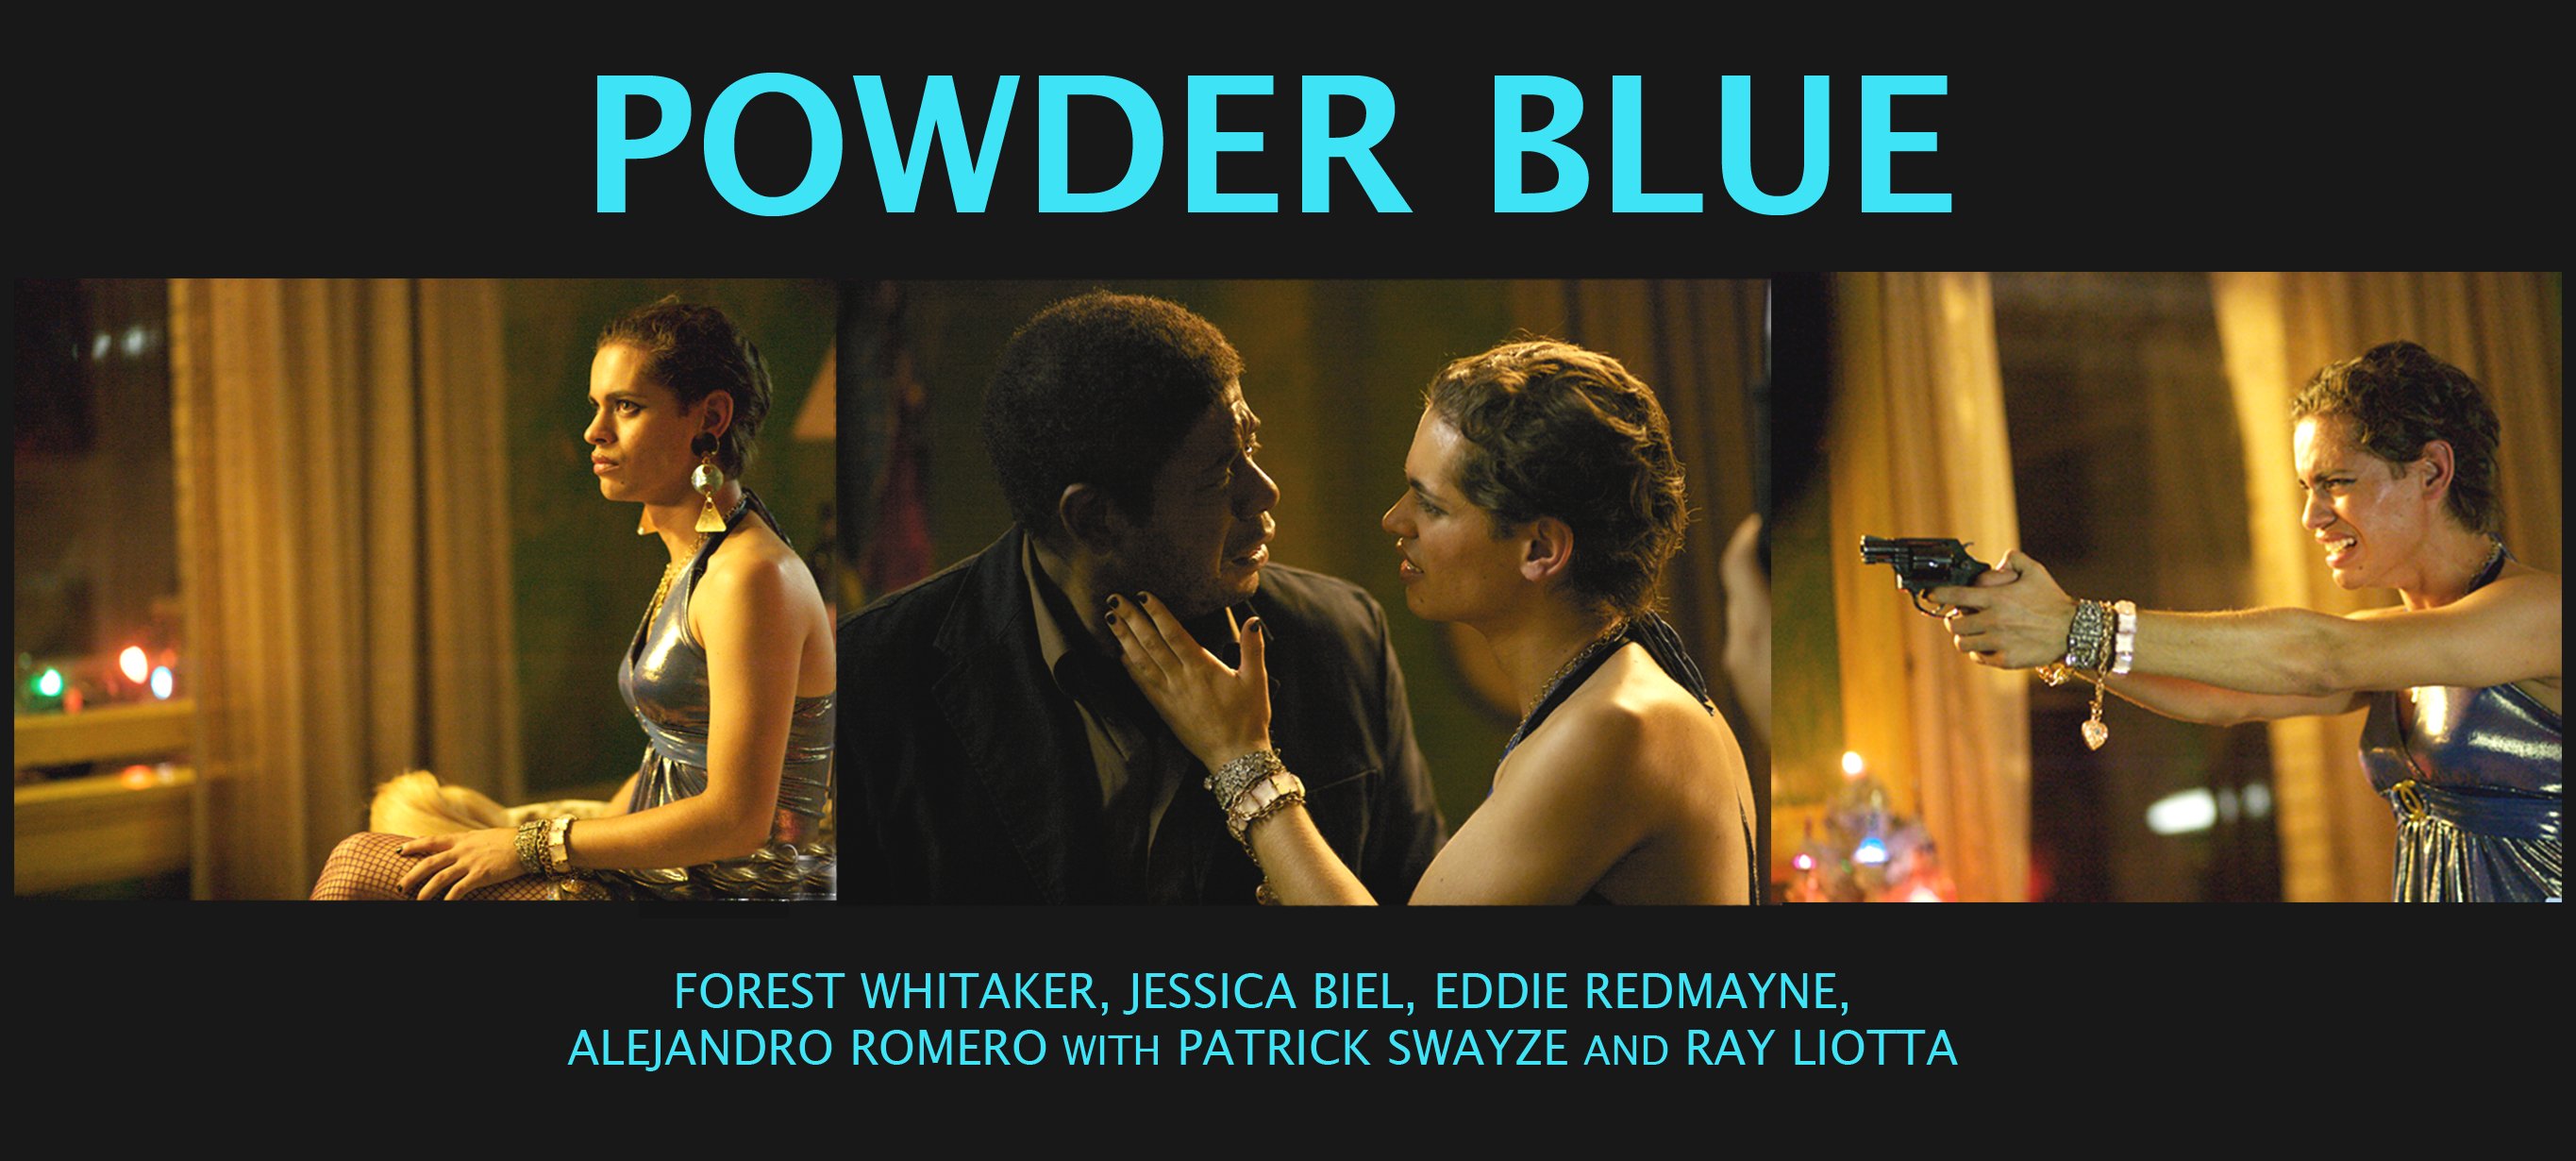 Powder Blue - film debut opposite Forest Whitaker